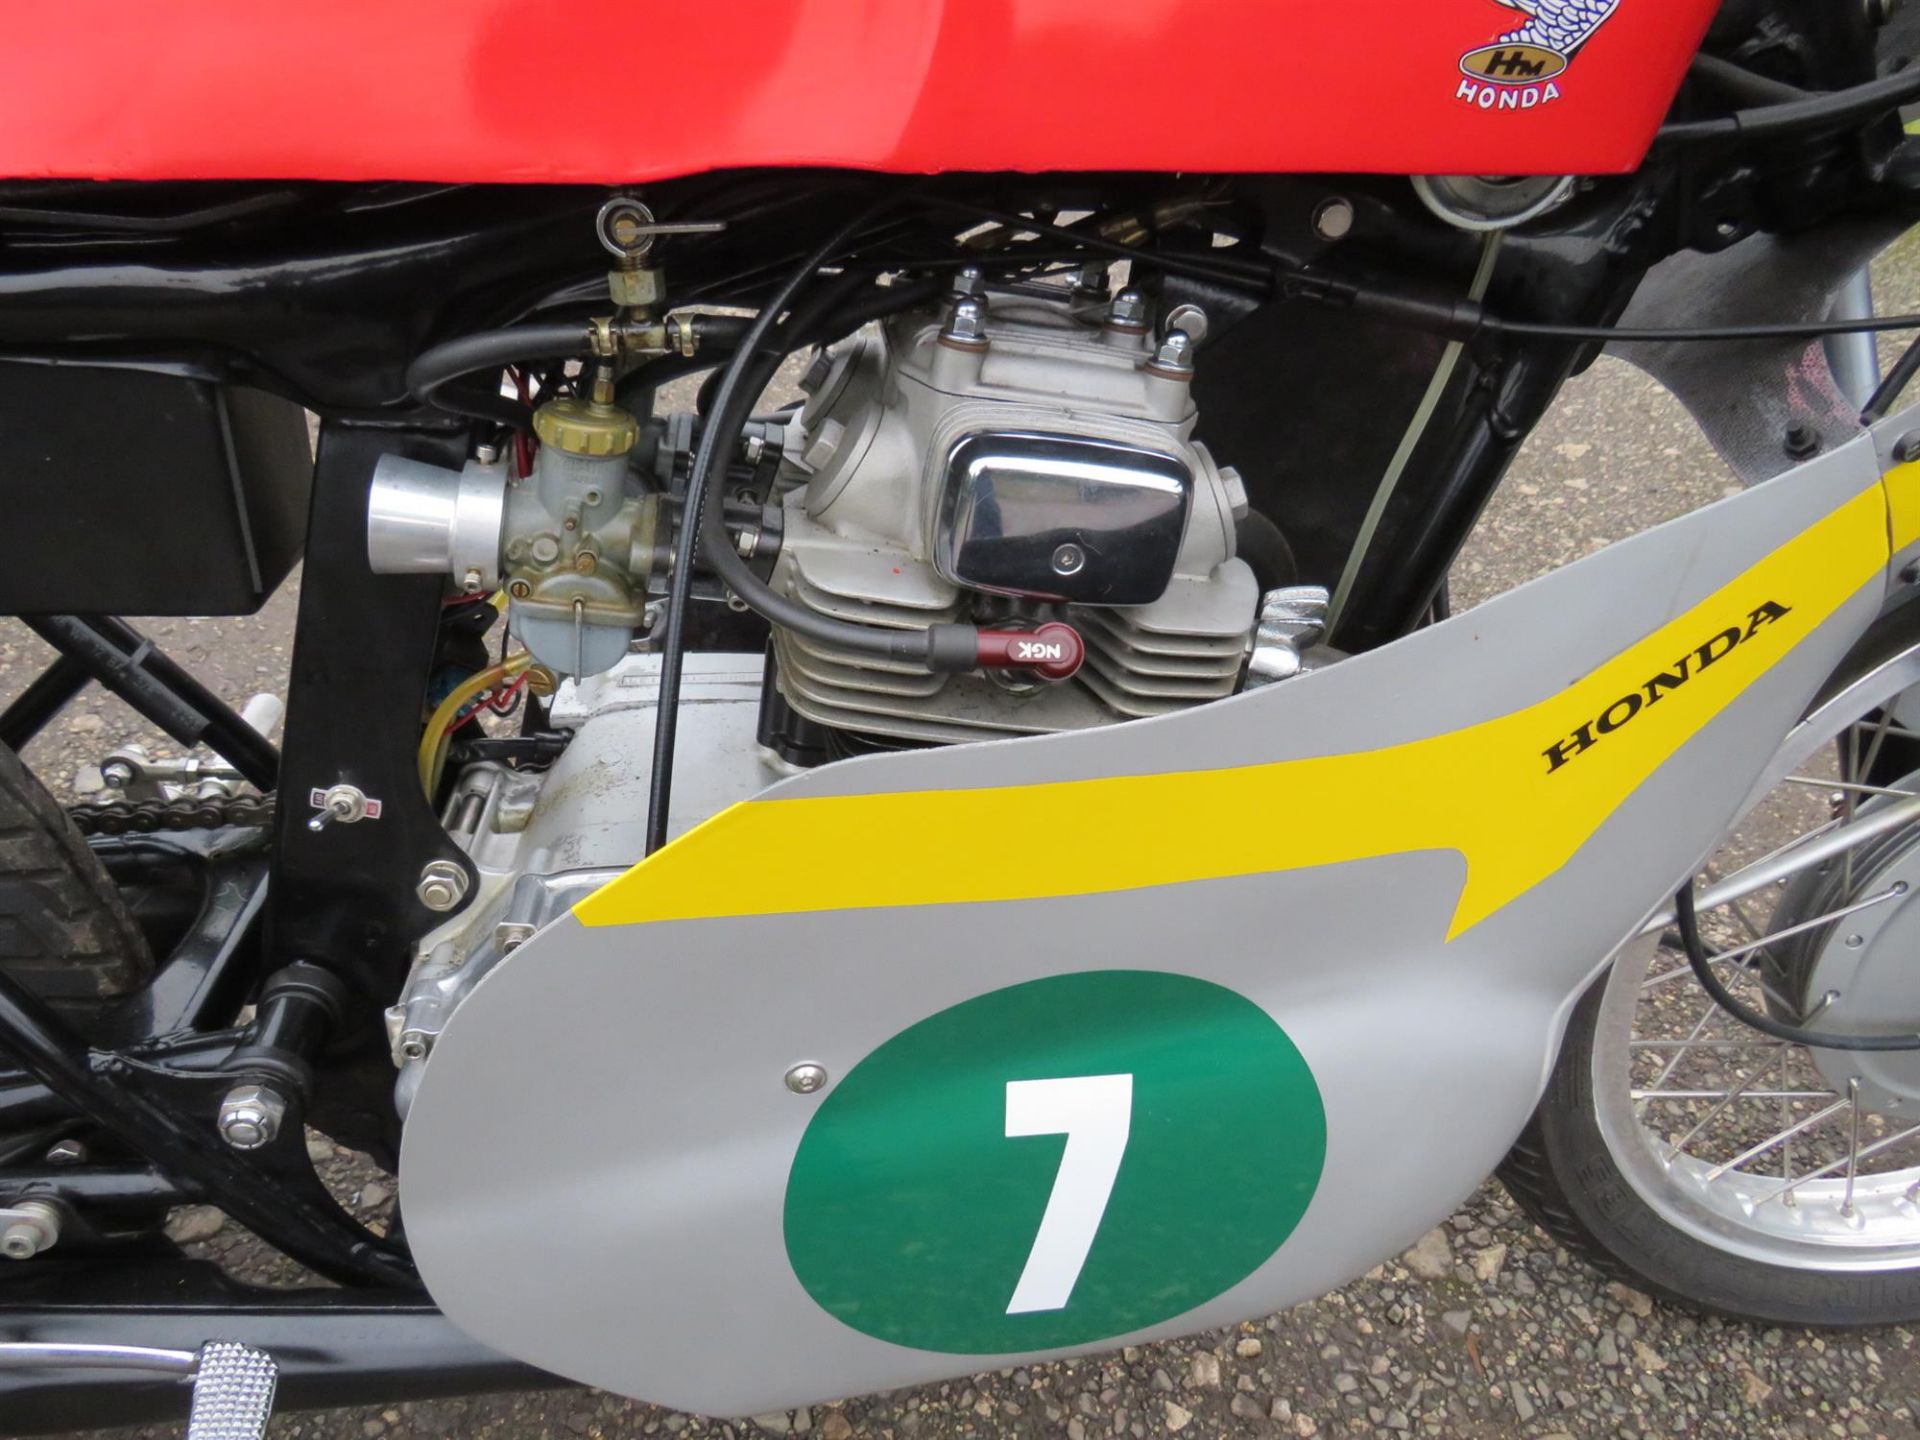 1977 Honda CB200 'RC116' Replica 198cc - Image 3 of 10